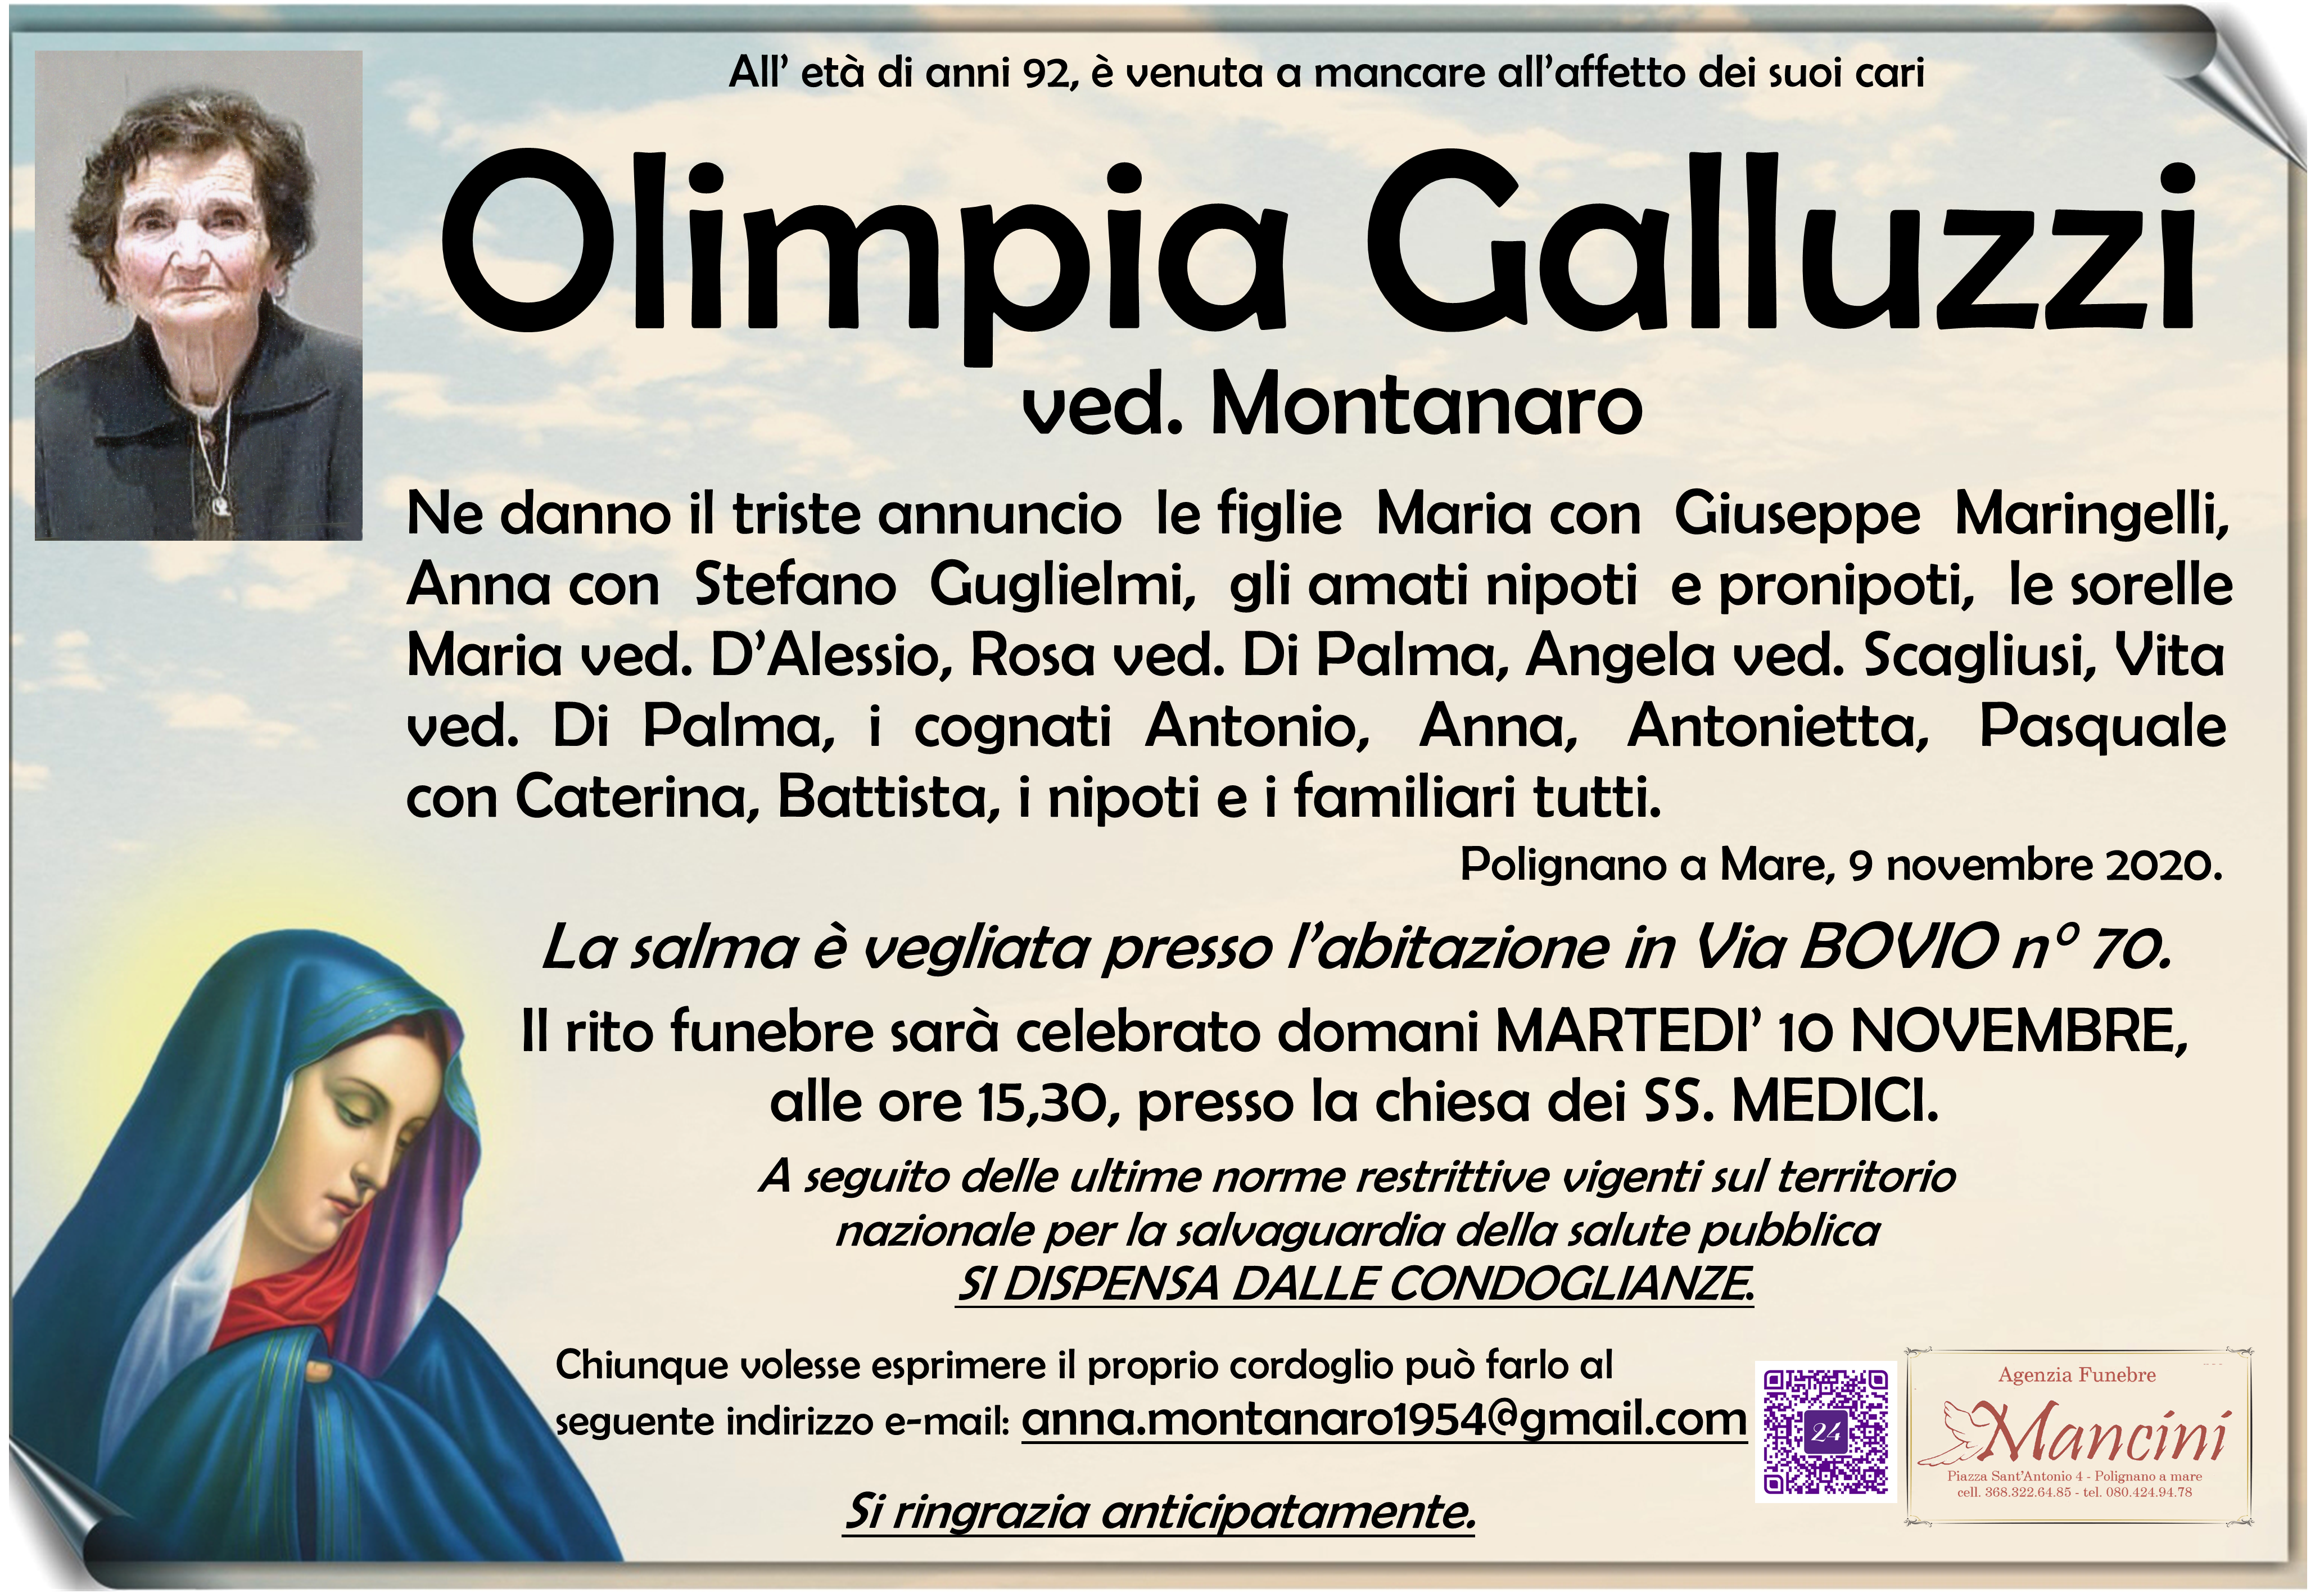 Olimpia Galluzzi